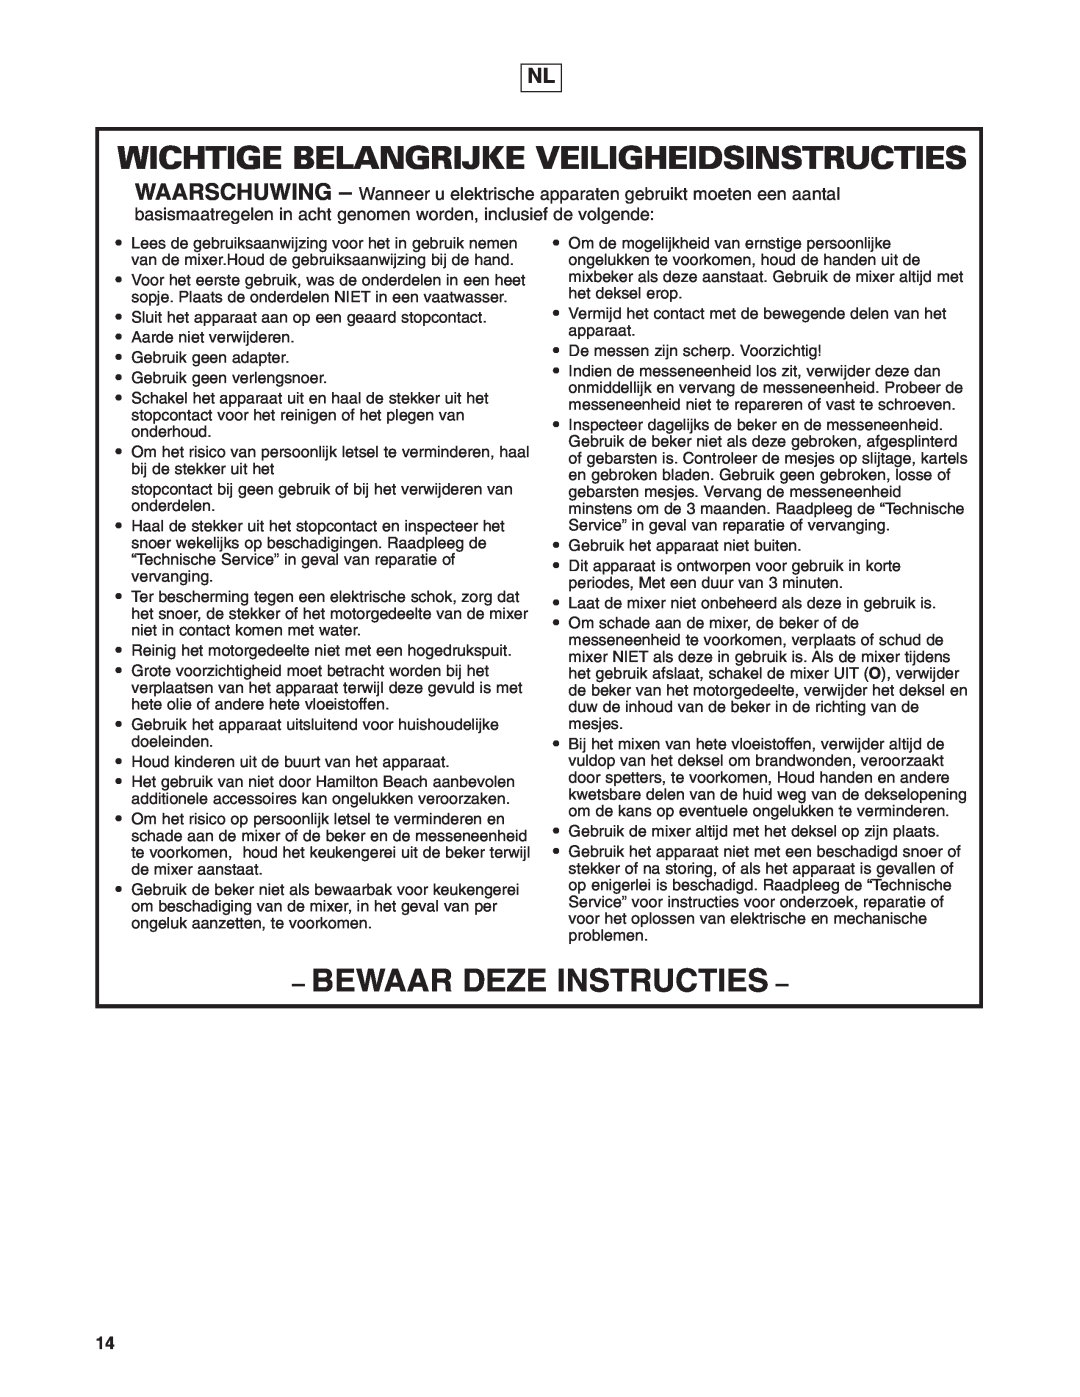 Hamilton Beach 908 Series operation manual Wichtige Belangrijke Veiligheidsinstructies, Bewaar Deze Instructies 